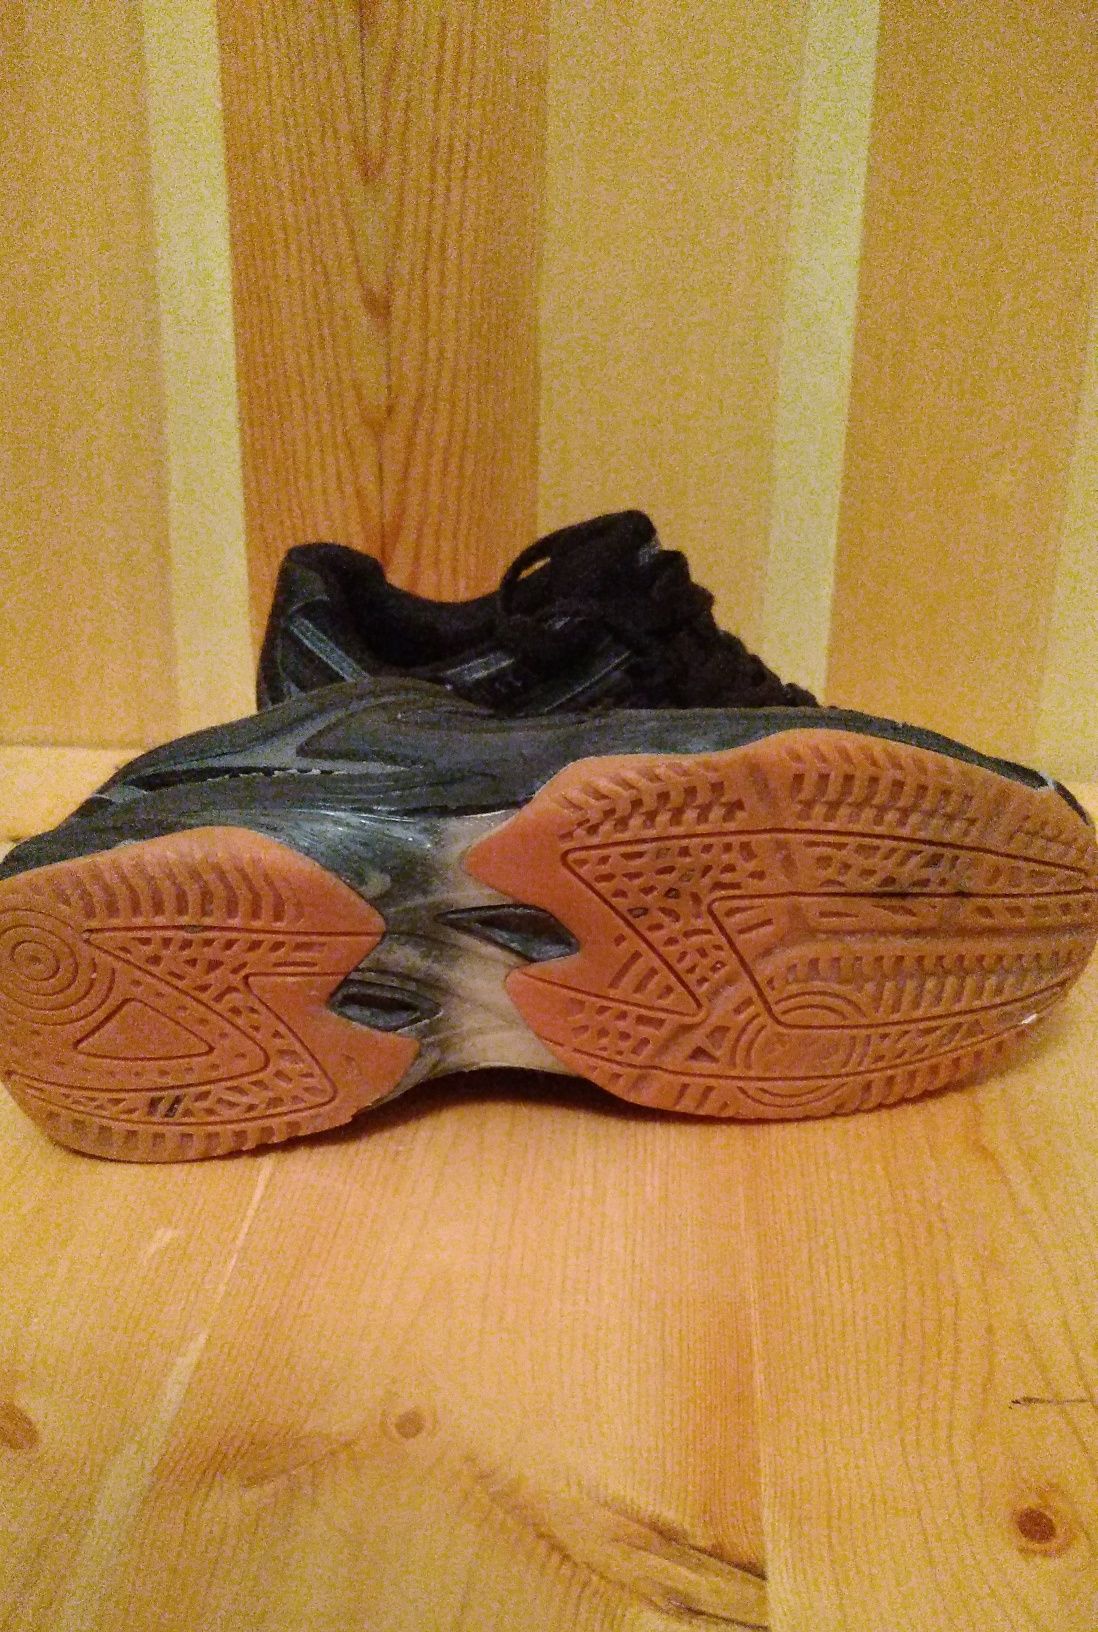 теннисные кроссовки "Dunlop"(размер 38).б/у